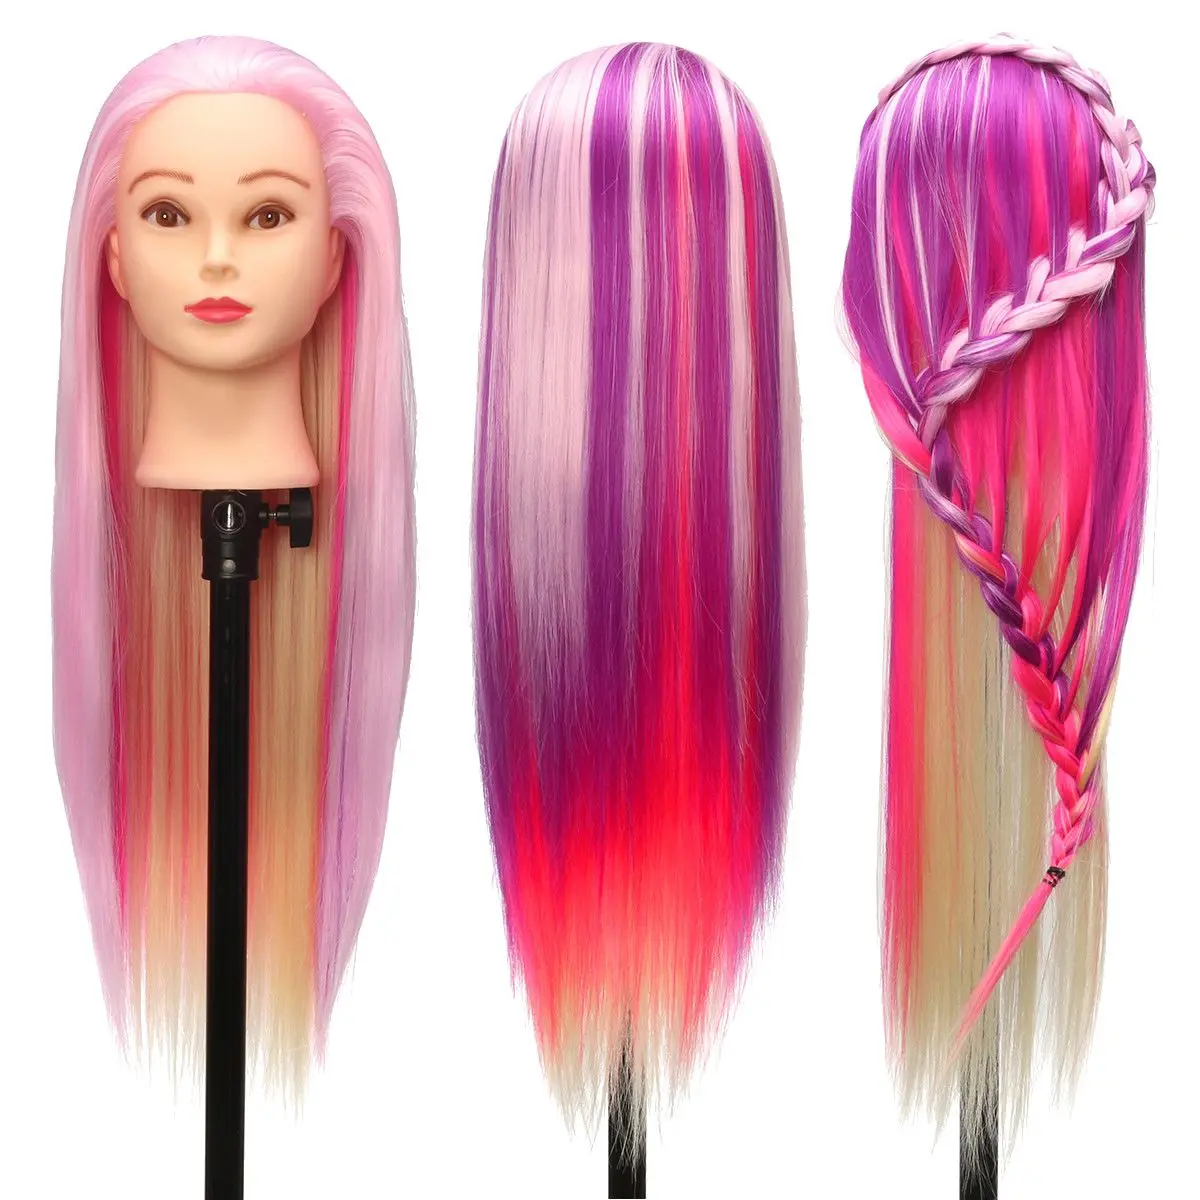 2" фиолетовый и розовый профессиональный салон Практика голова красочные высокой температуры волокна волос Модель парикмахерские манекены